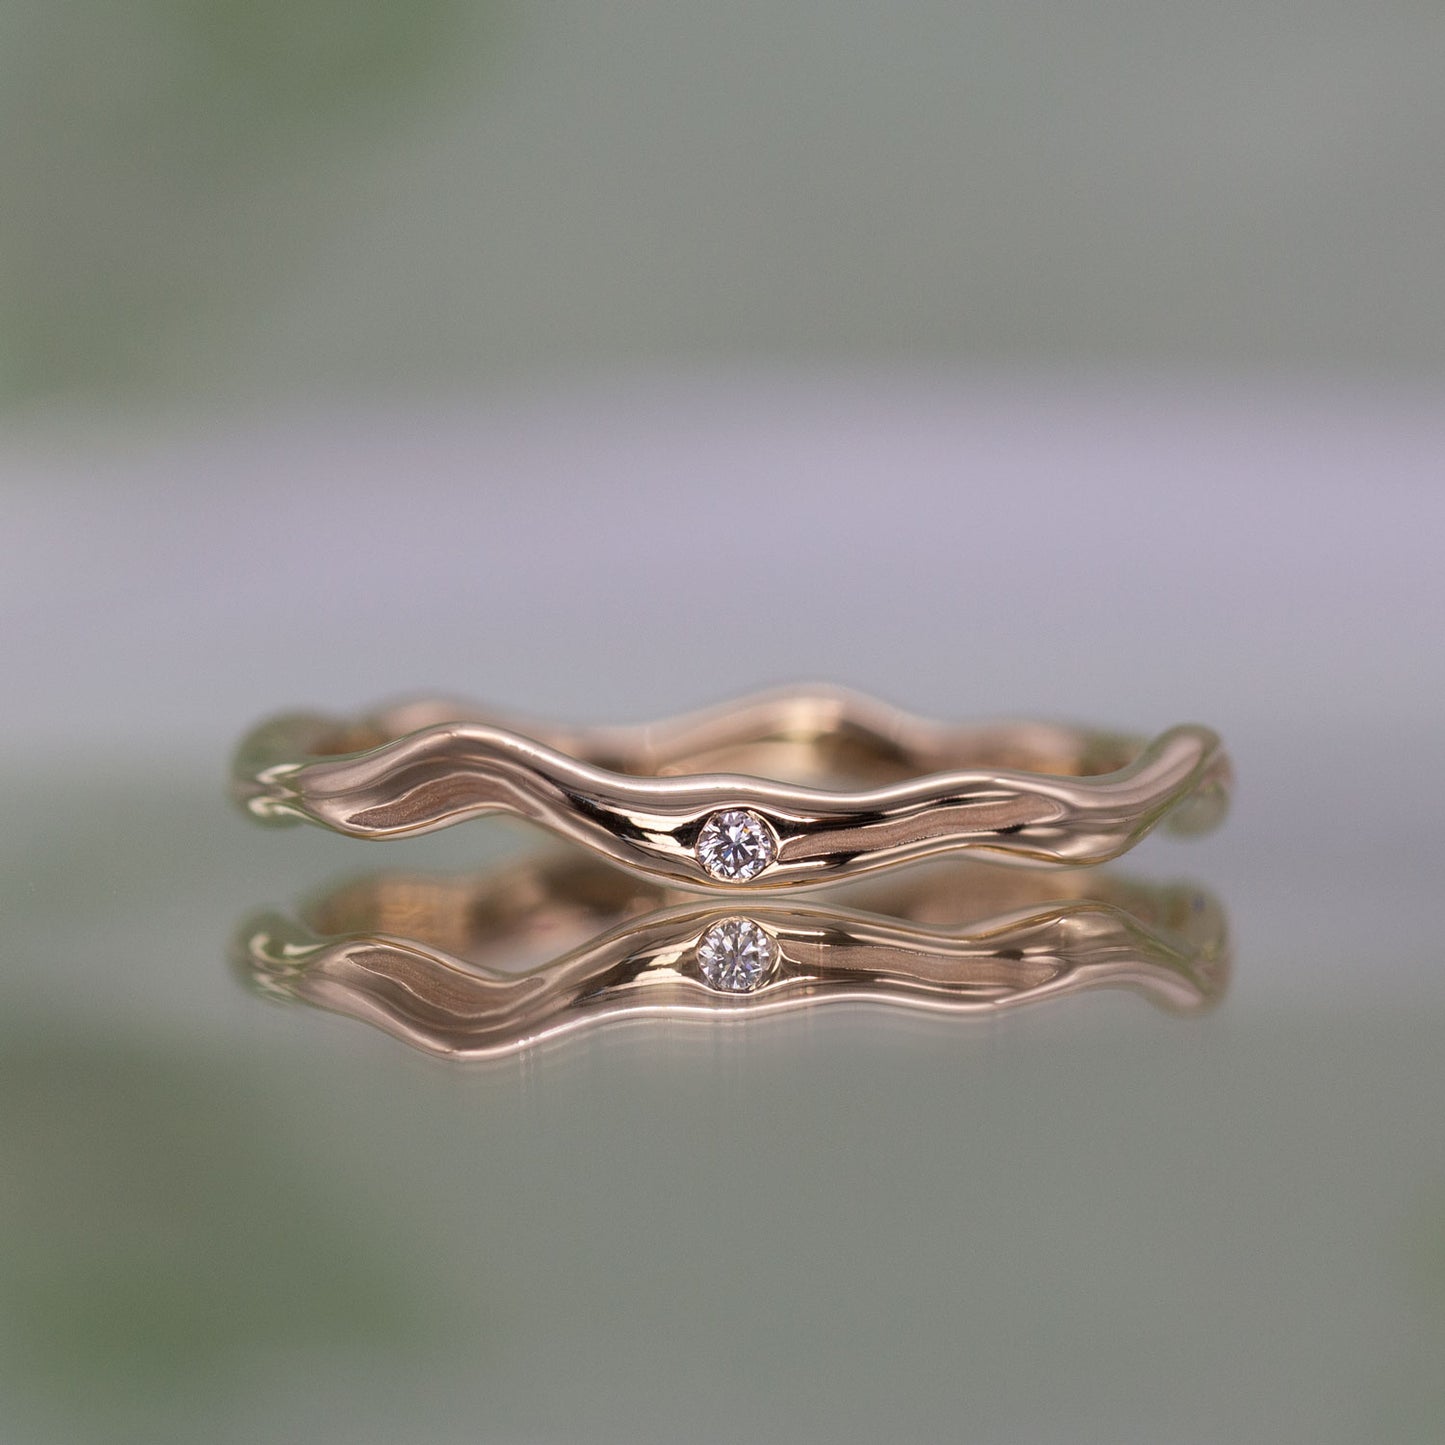 En tynd guld ring set forfra med en diamant. Formgivningen bugter sig i en harmonisk cirkel. 